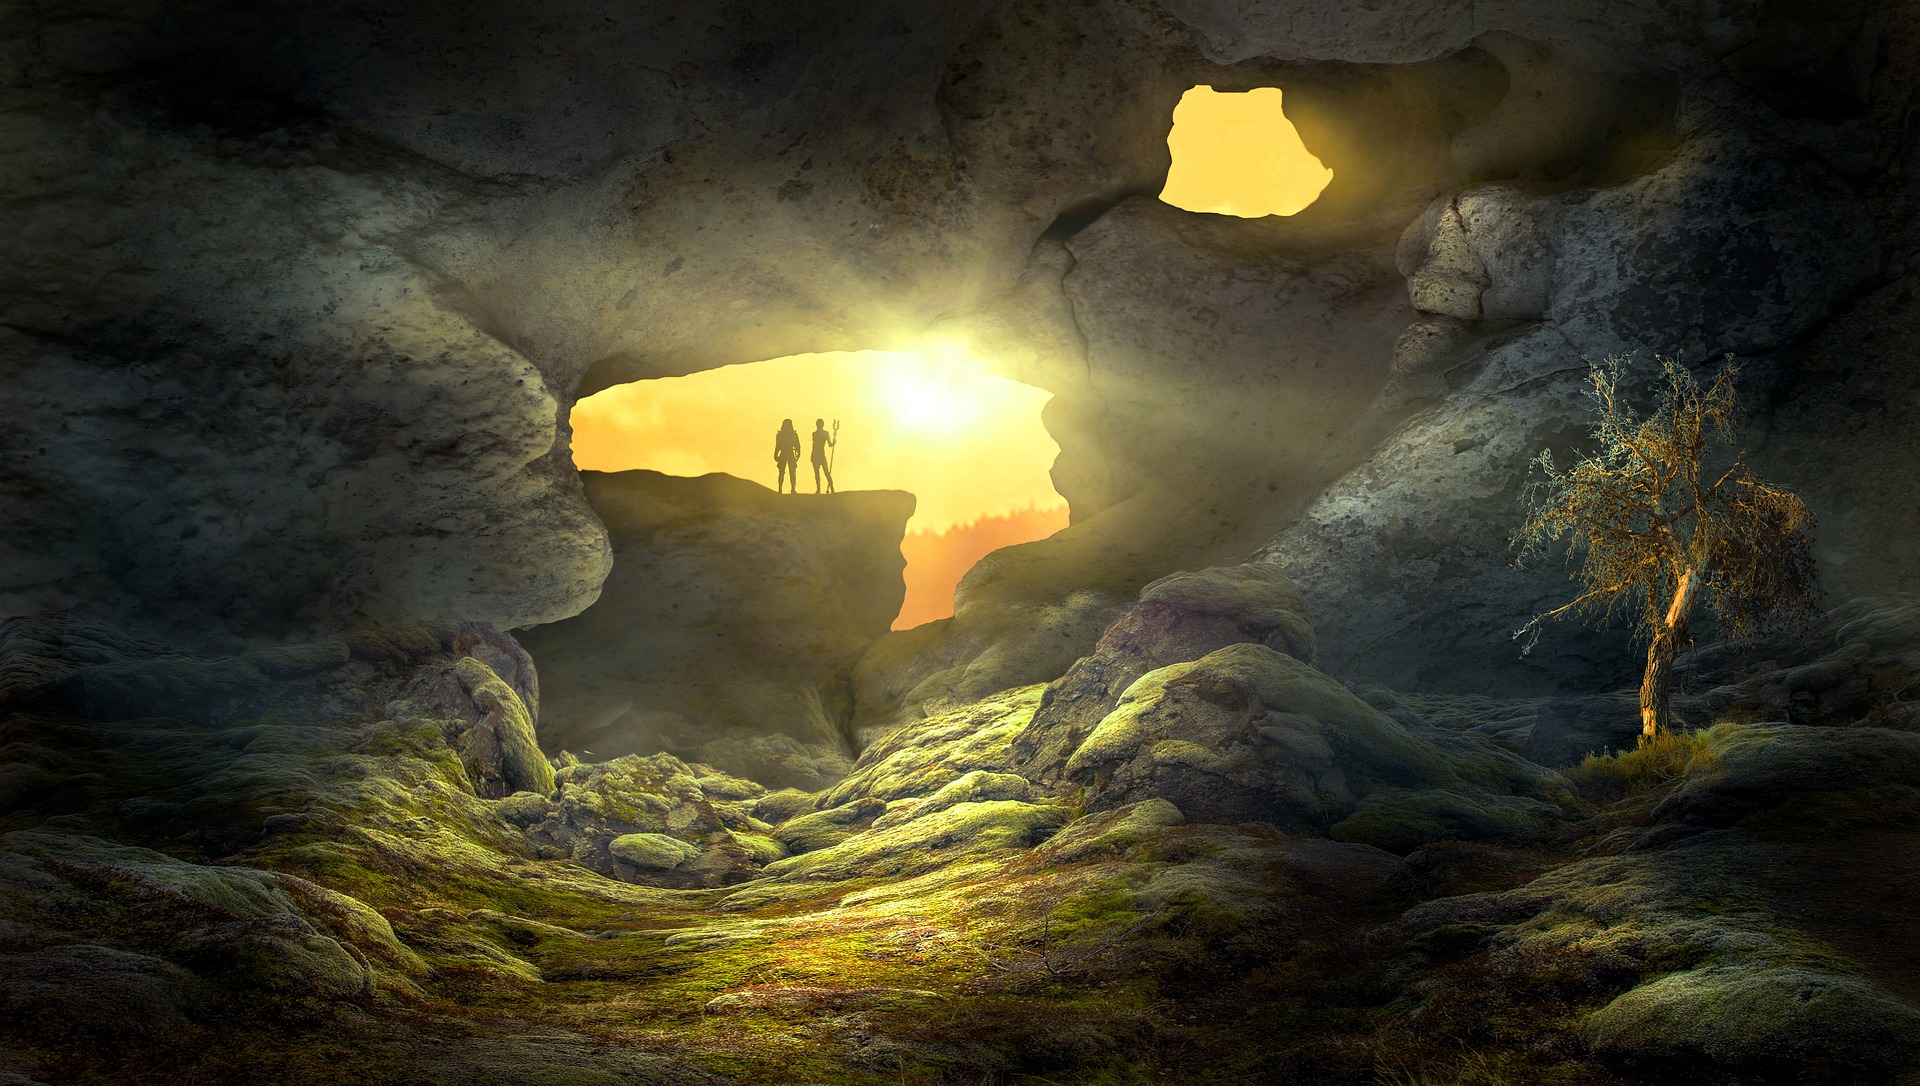 Fantasy Cave, by Stefan Keller, Courtesy of Pixabay